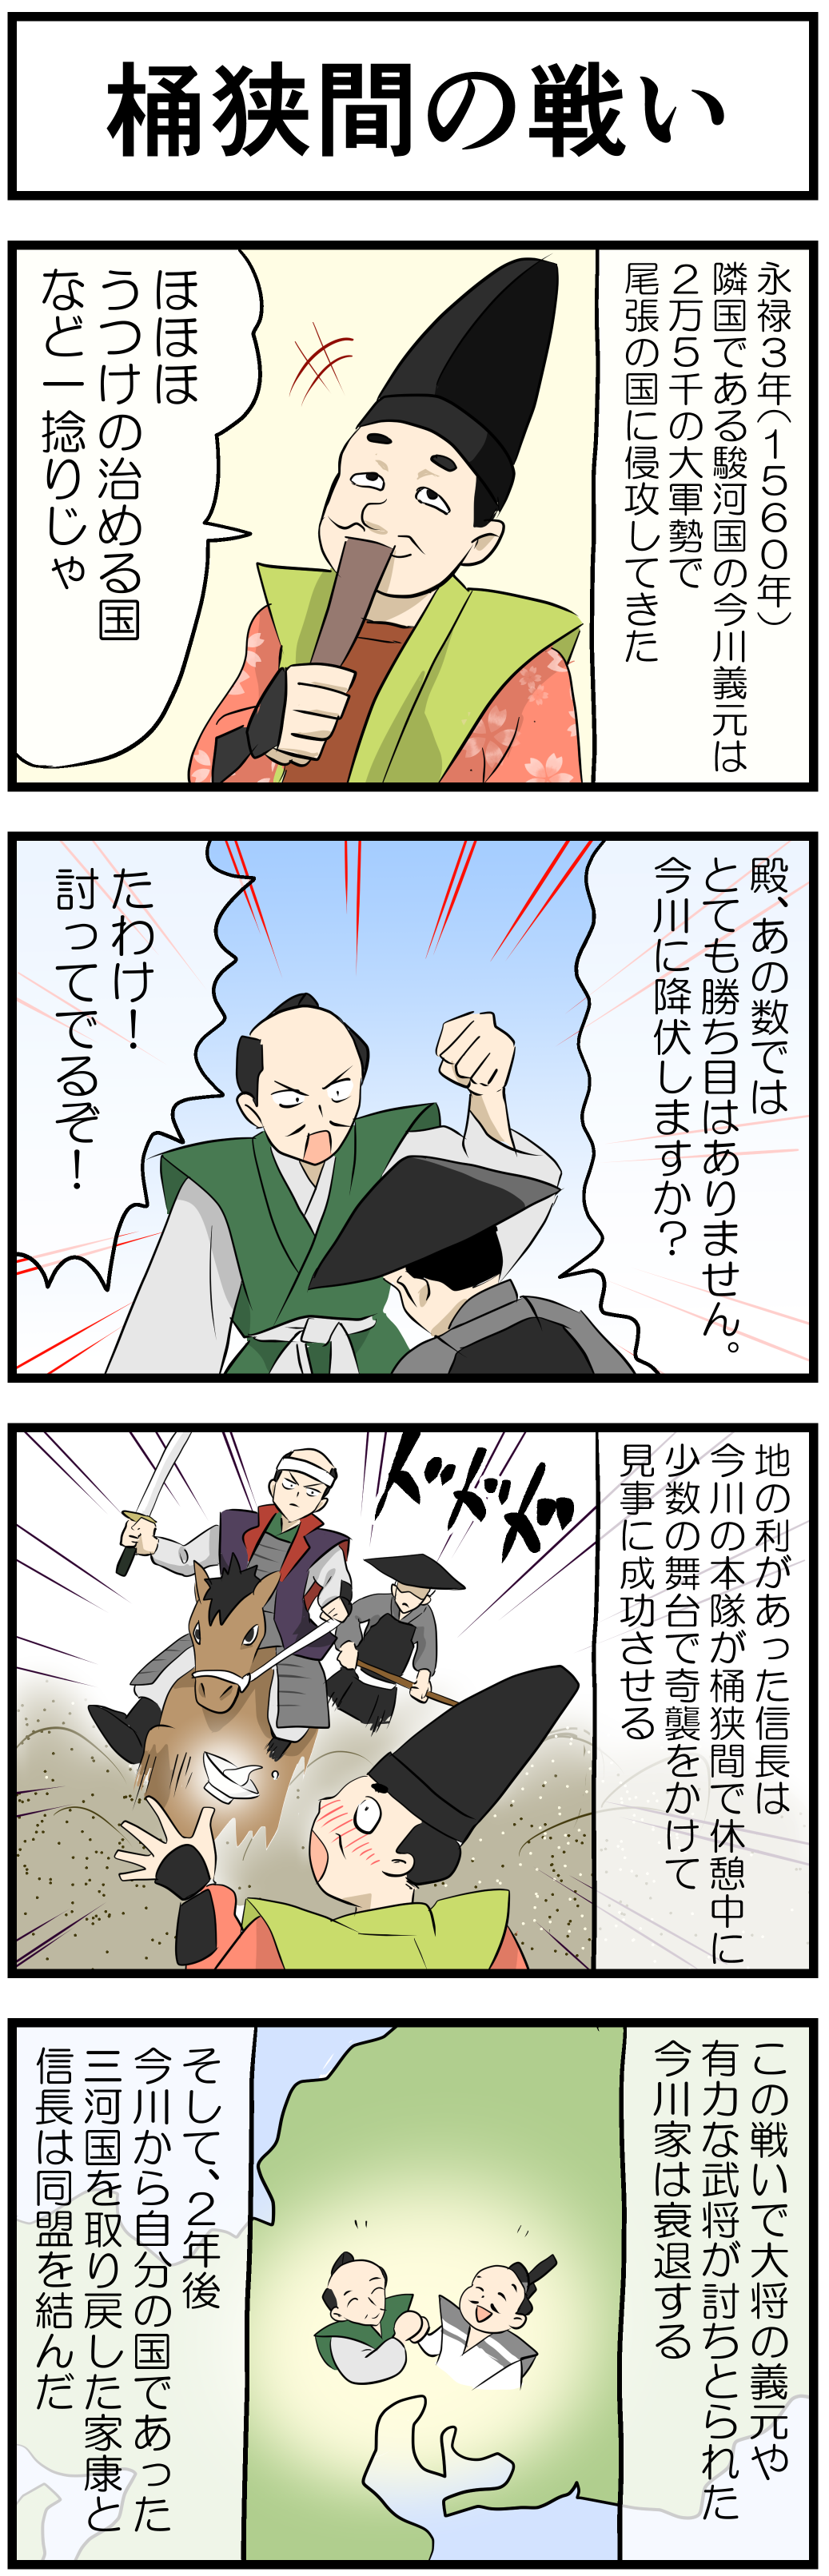 織田信長の一生 4コマ漫画で歴史の勉強 Novita 勉強法